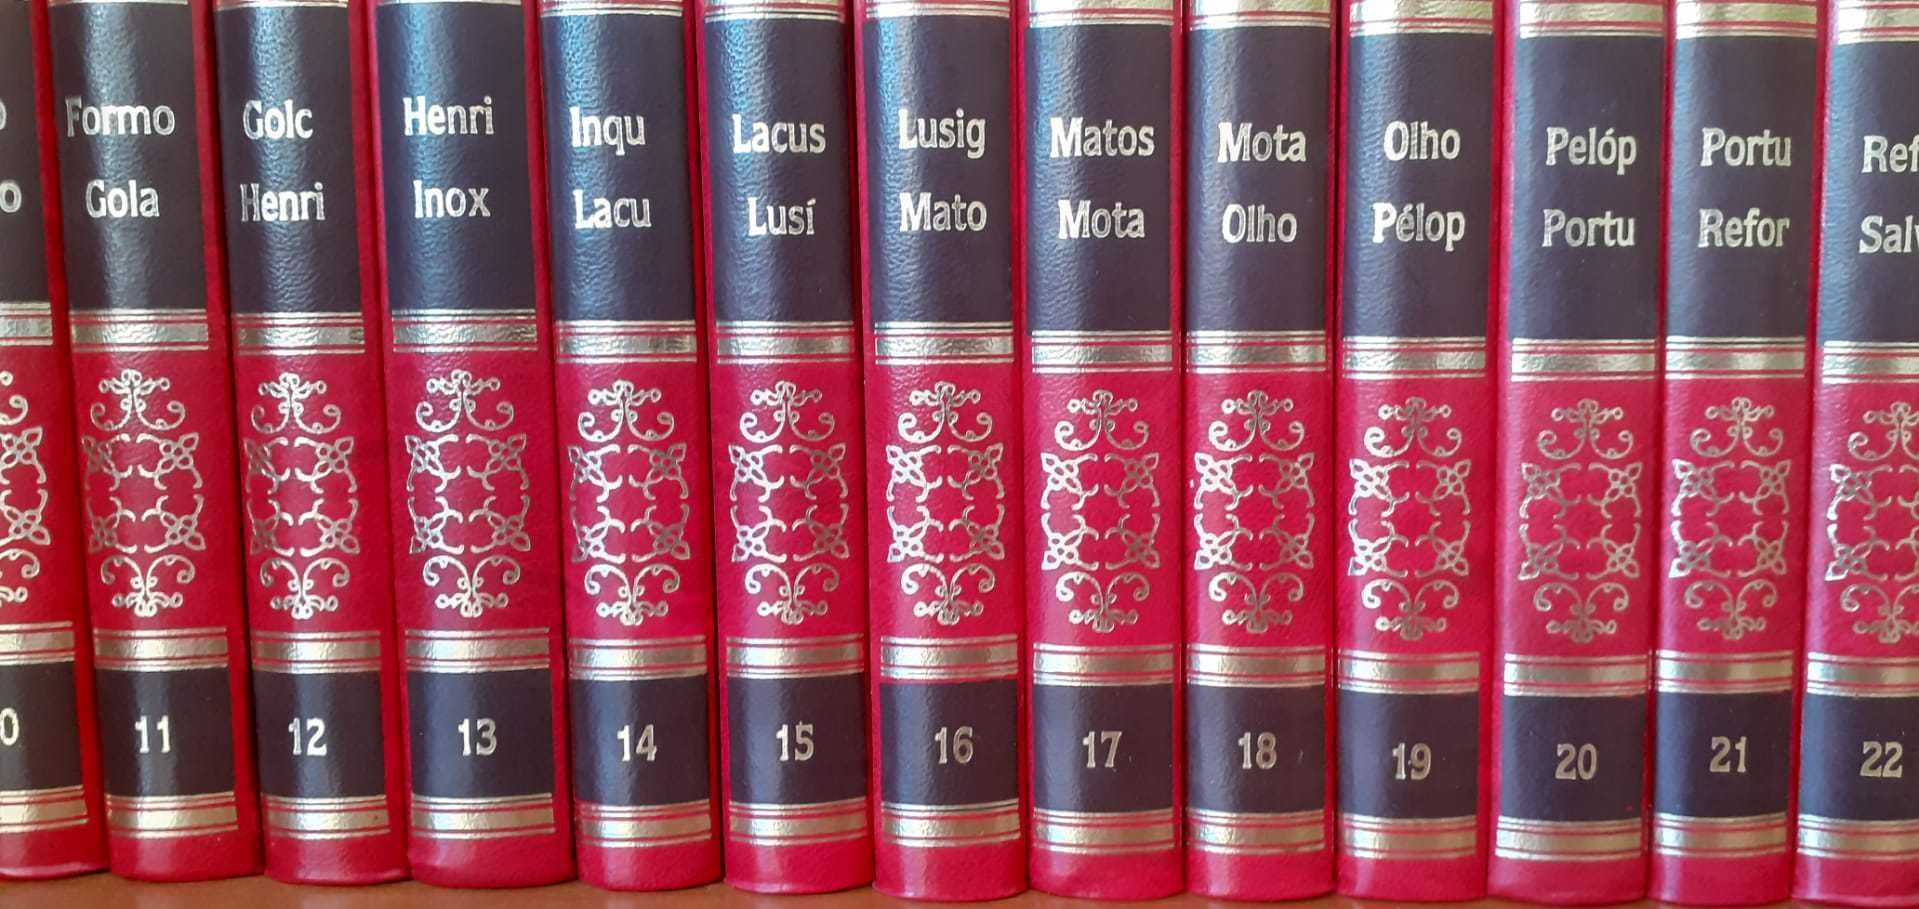 Enciclopédia Portuguesa 26 volumes